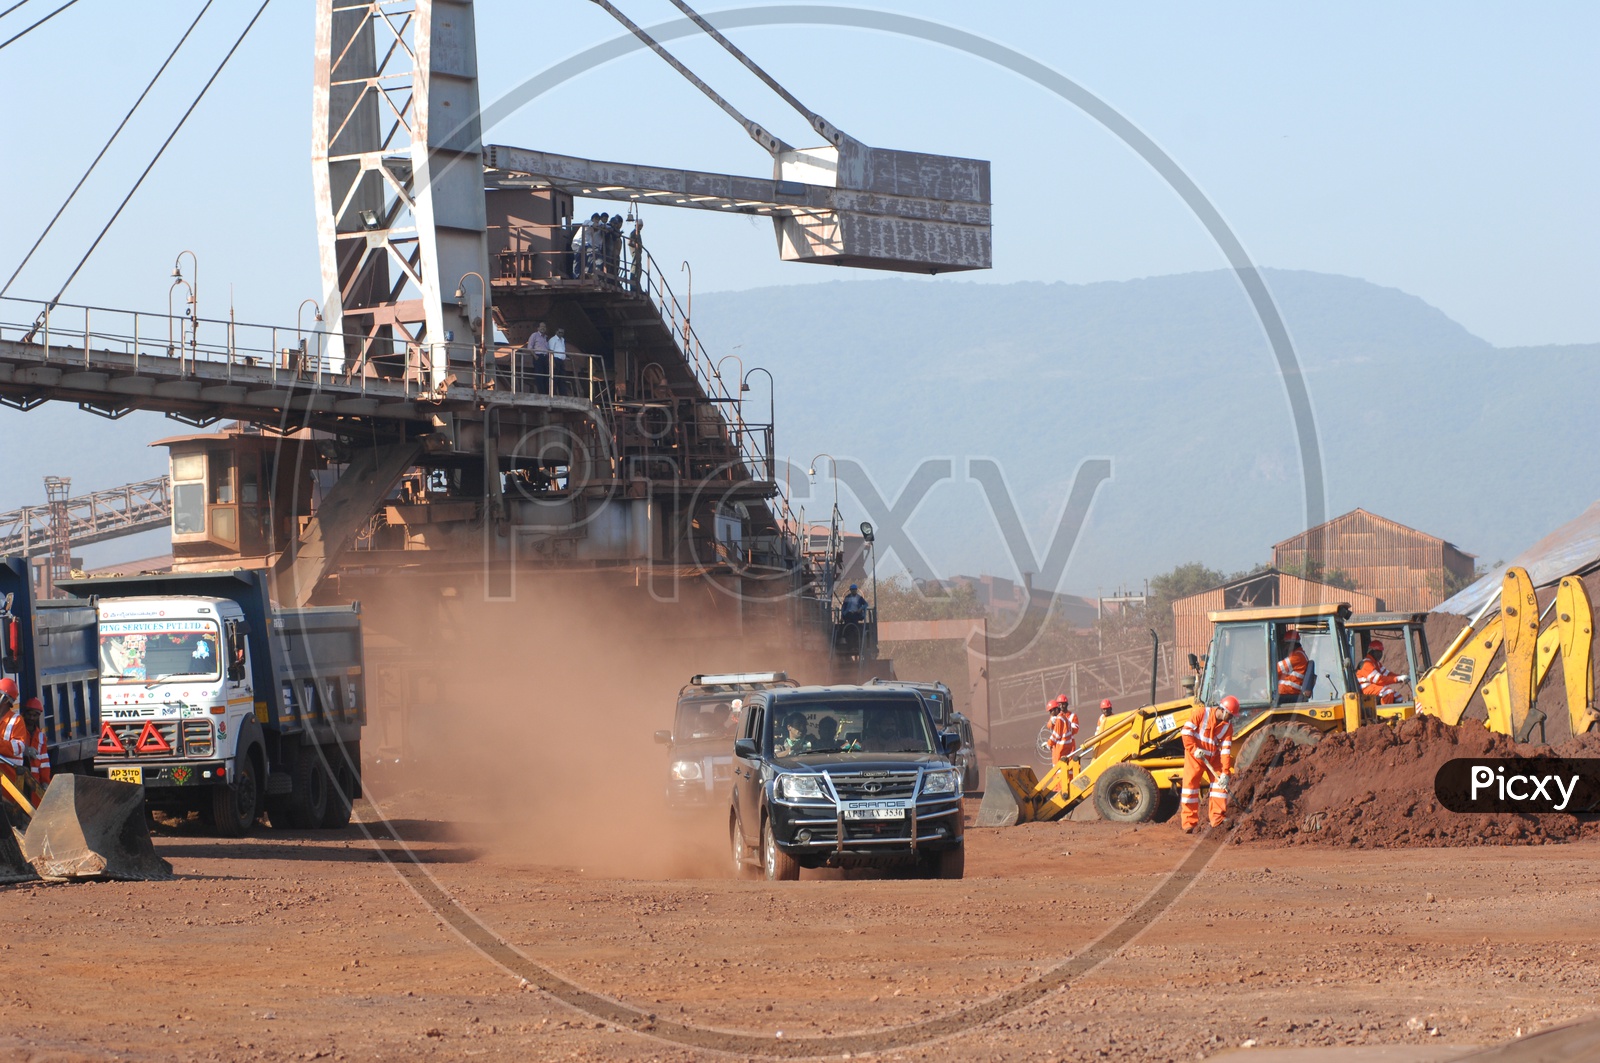 Xuv Car In Mining Area